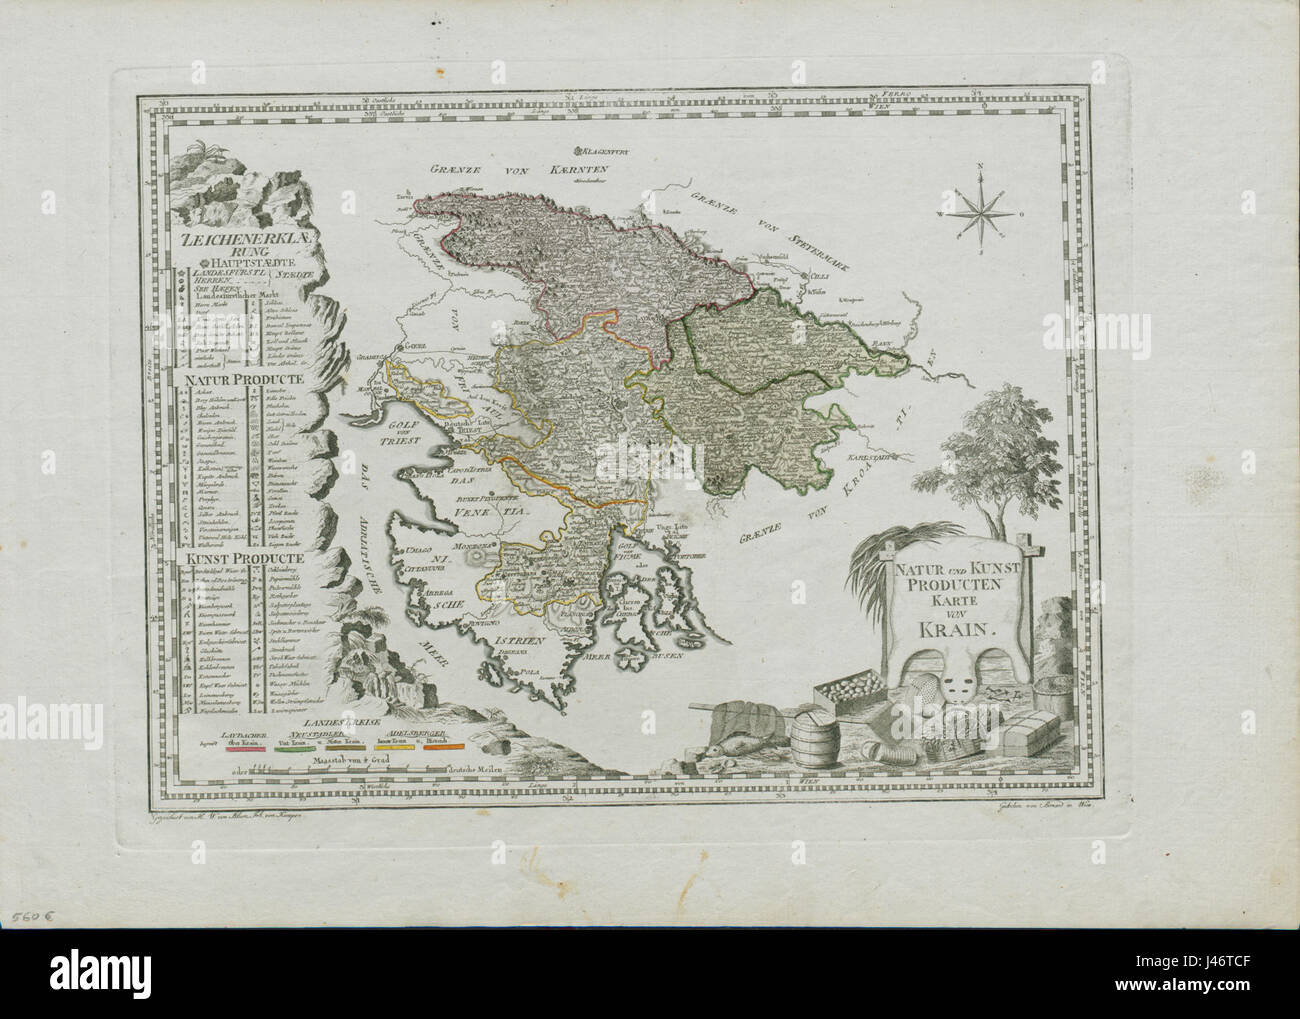 Natur und Kunst Producten Karte von Krain 1795 Banque D'Images